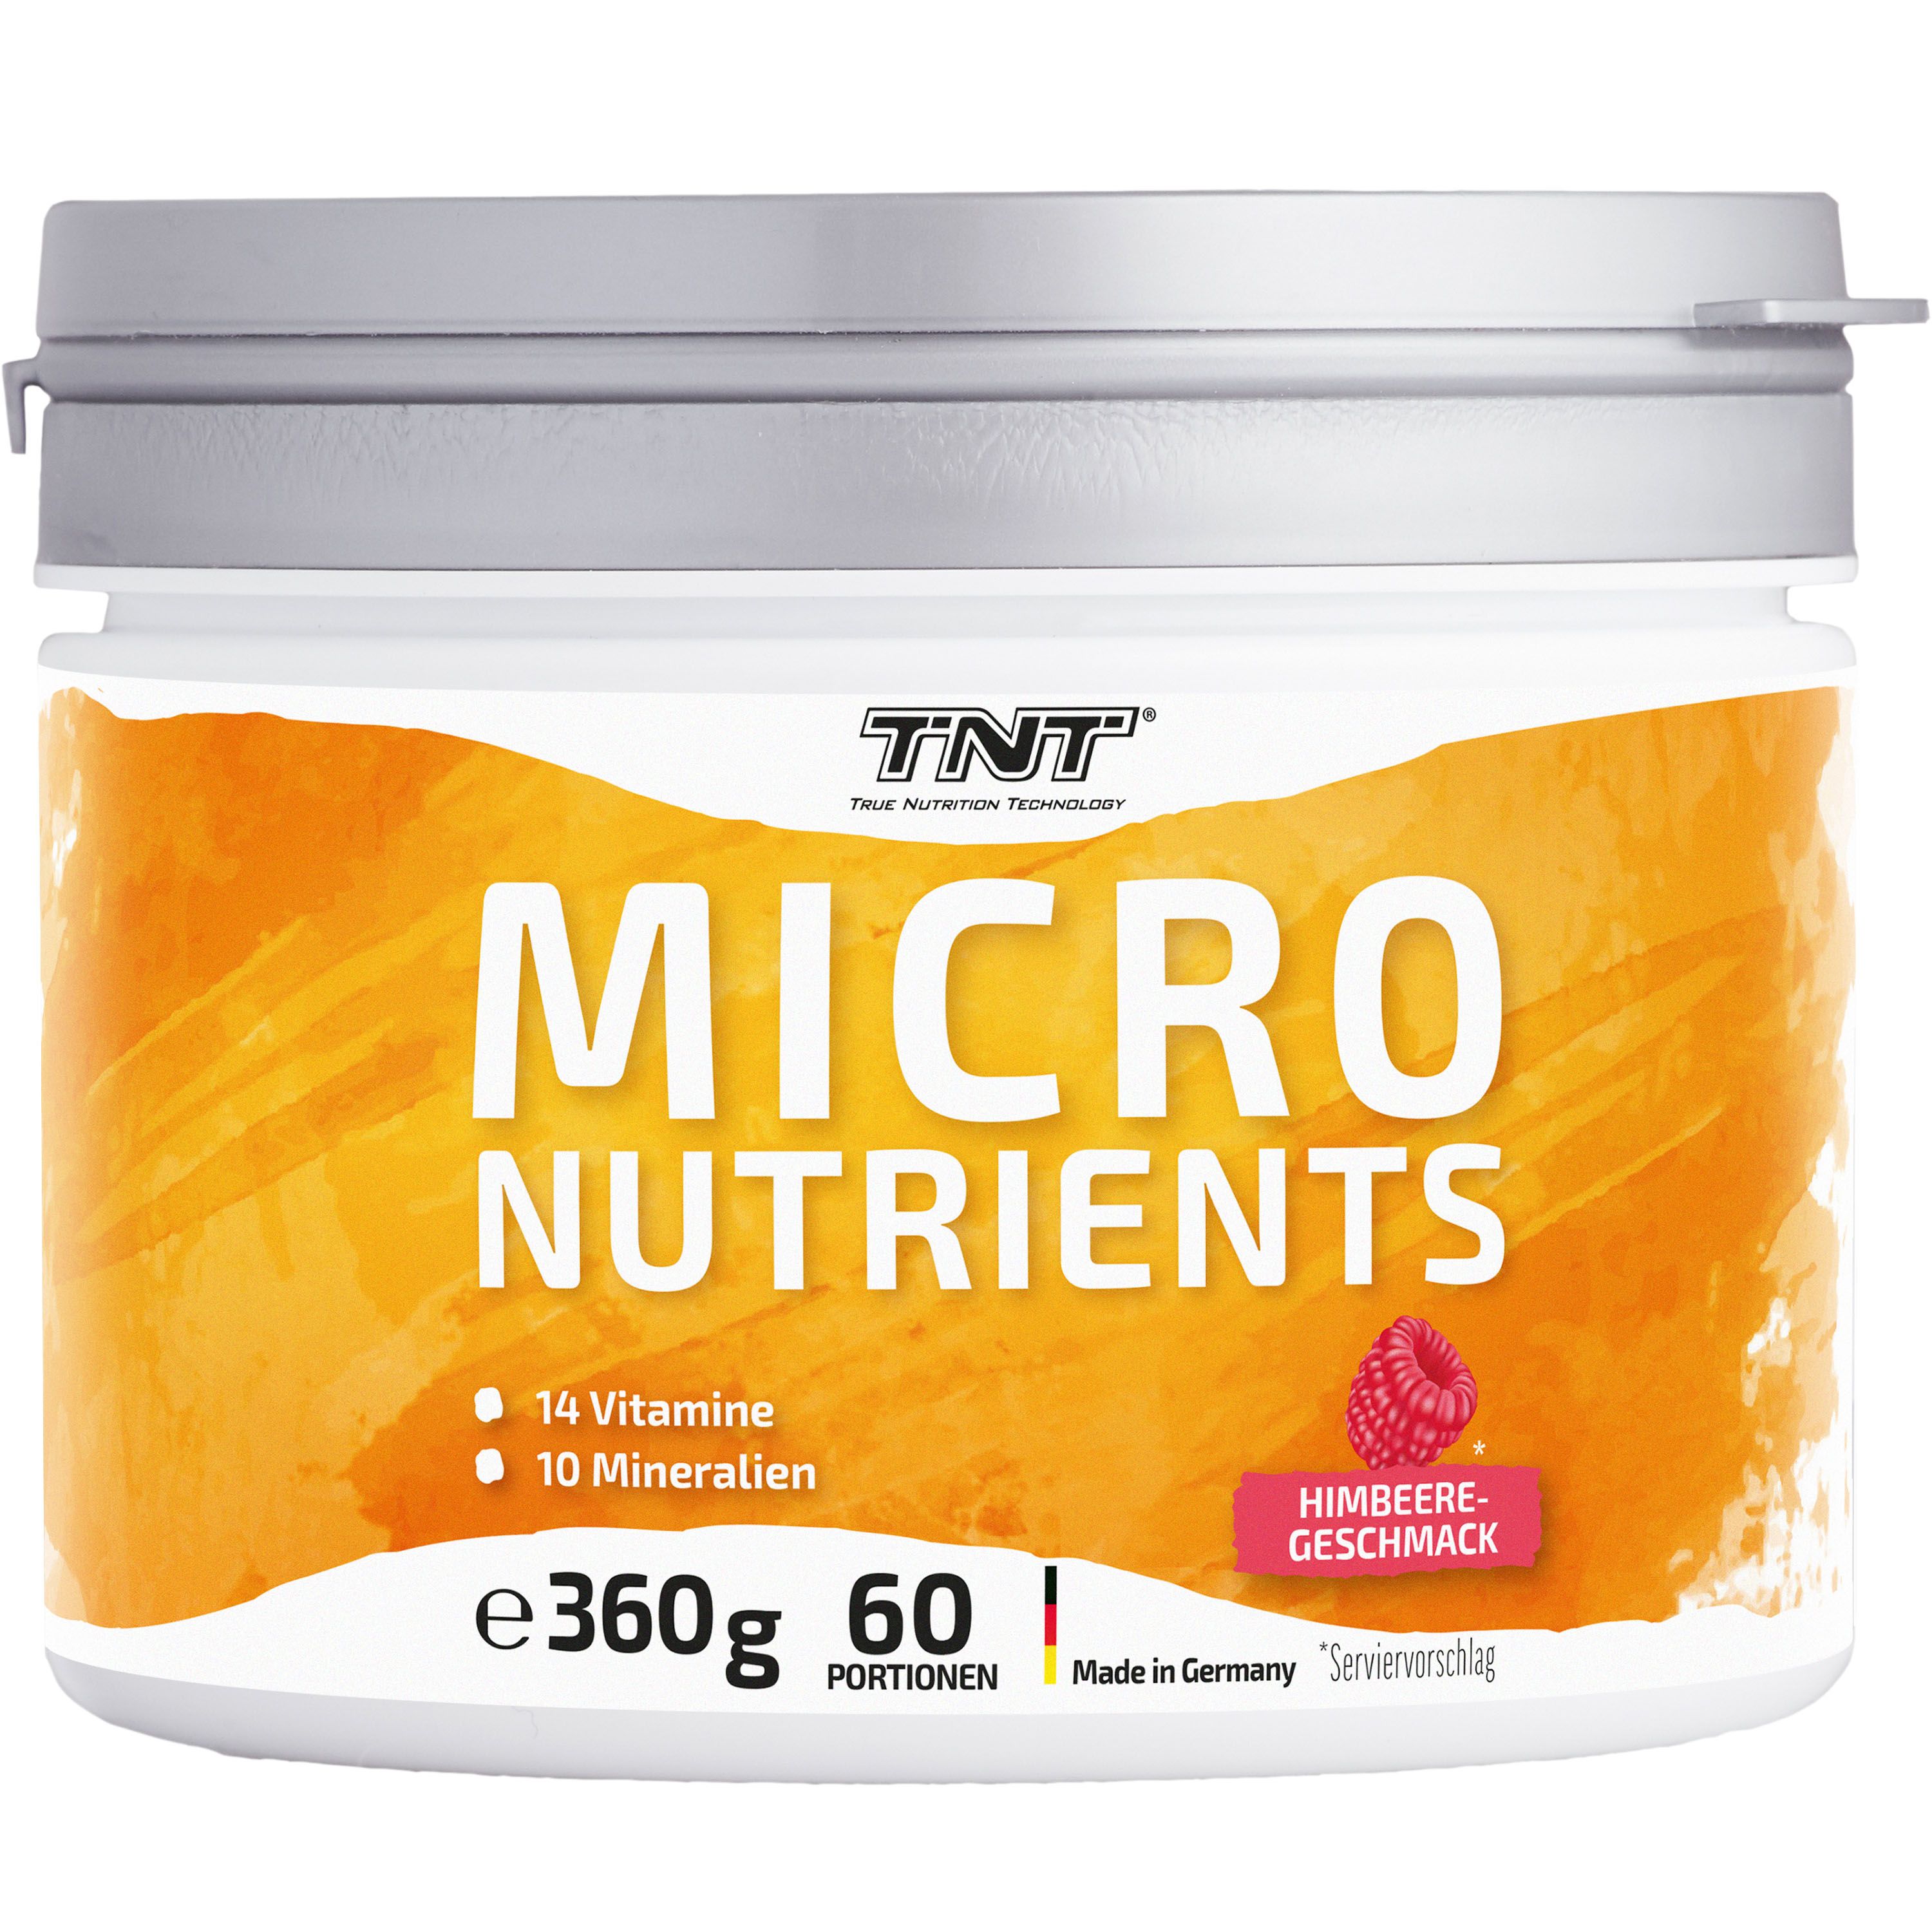 TNT Micronutrients, alle wichtigen Vitamine und Mineralien in einem Produkt, Himbeere-Geschmack